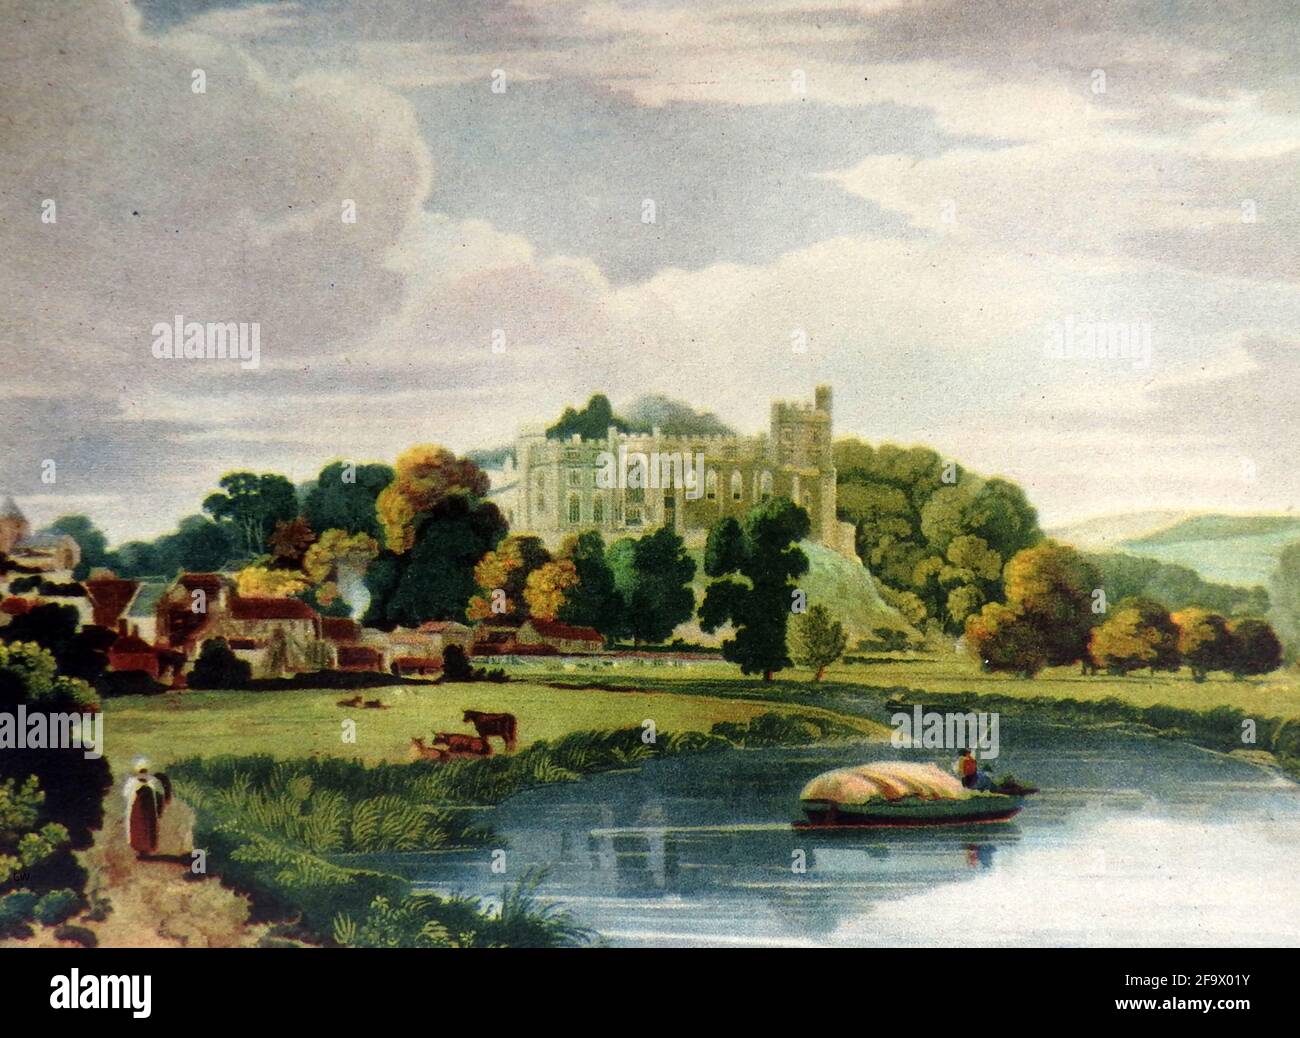 Eine alte, farbige Ansicht von Arundel Castle, West Sussex (South Downs), England, um 1800, zeigt eine ruhige, pastorale Szene in der Nähe von Arundel mit einem Bootsmann, der den Fluss Arun in einem kleinen Handelsschiff überquert. Der Name Arundel hat seine Basis im Alten Englisch - Harhunedell, 'Tal des Horehund' Stockfoto